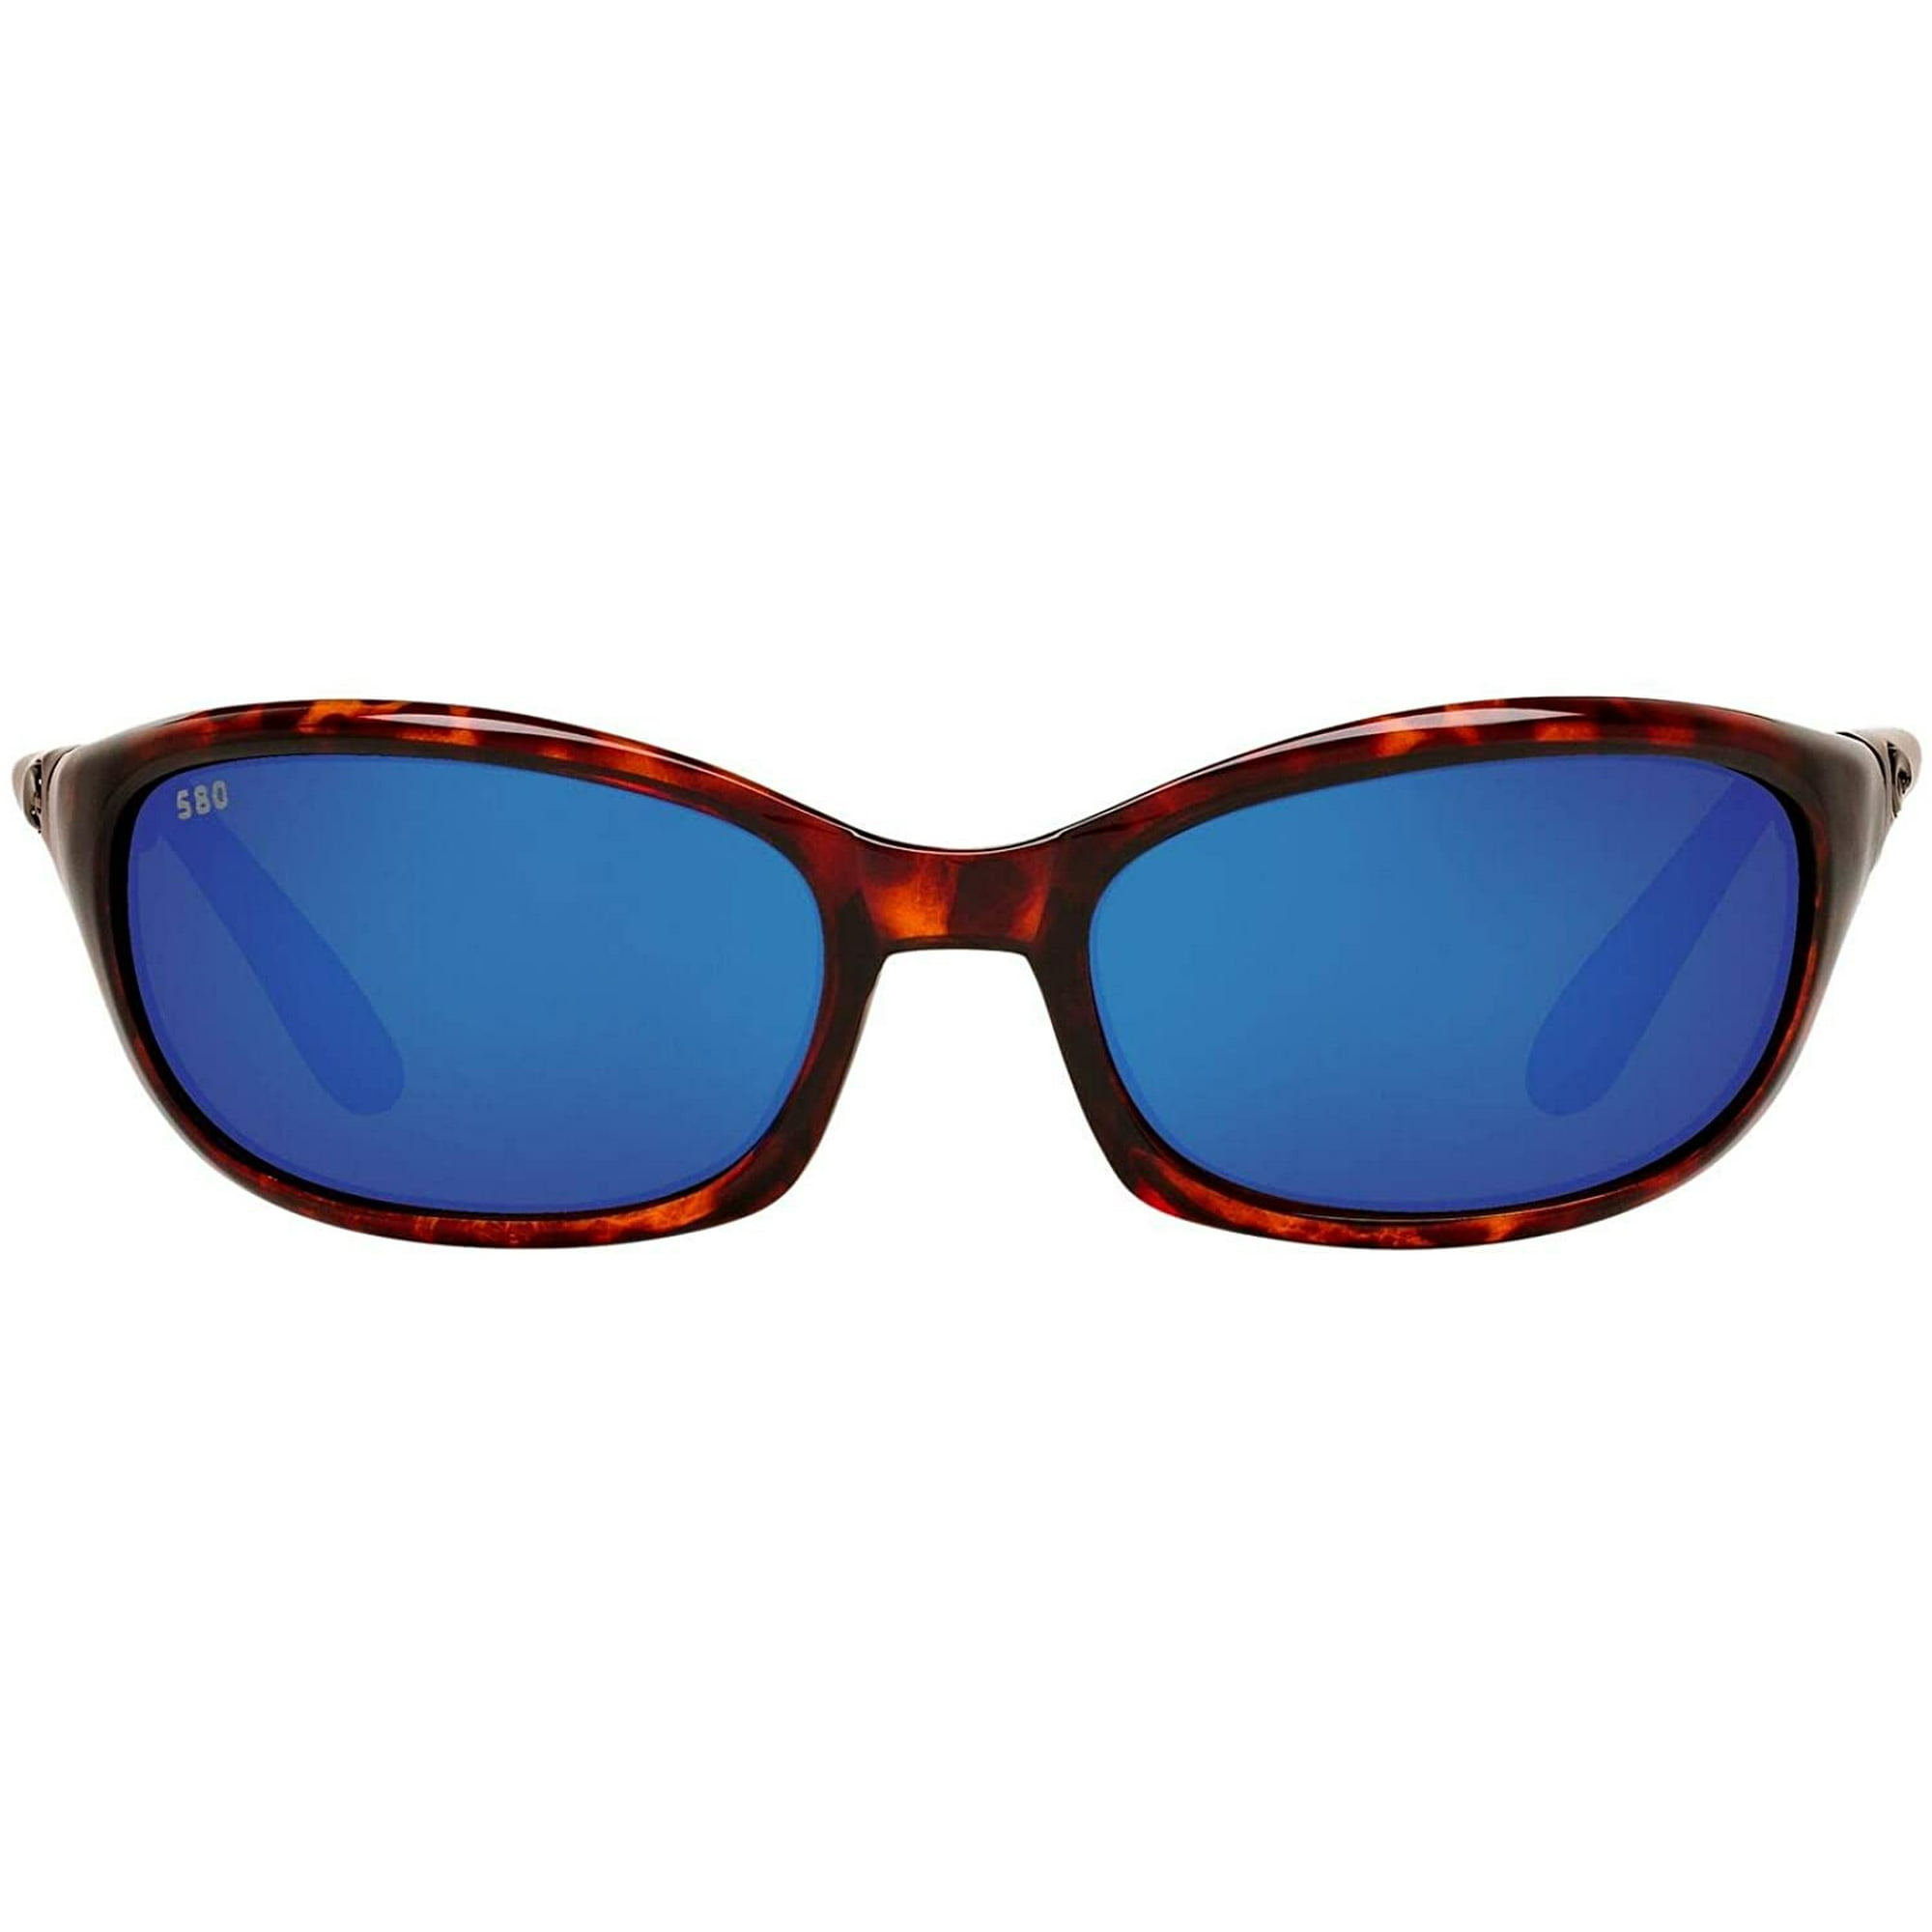 Costa Del Mar Men's Harpoon Polarized Oval Sunglasses, Tortoise